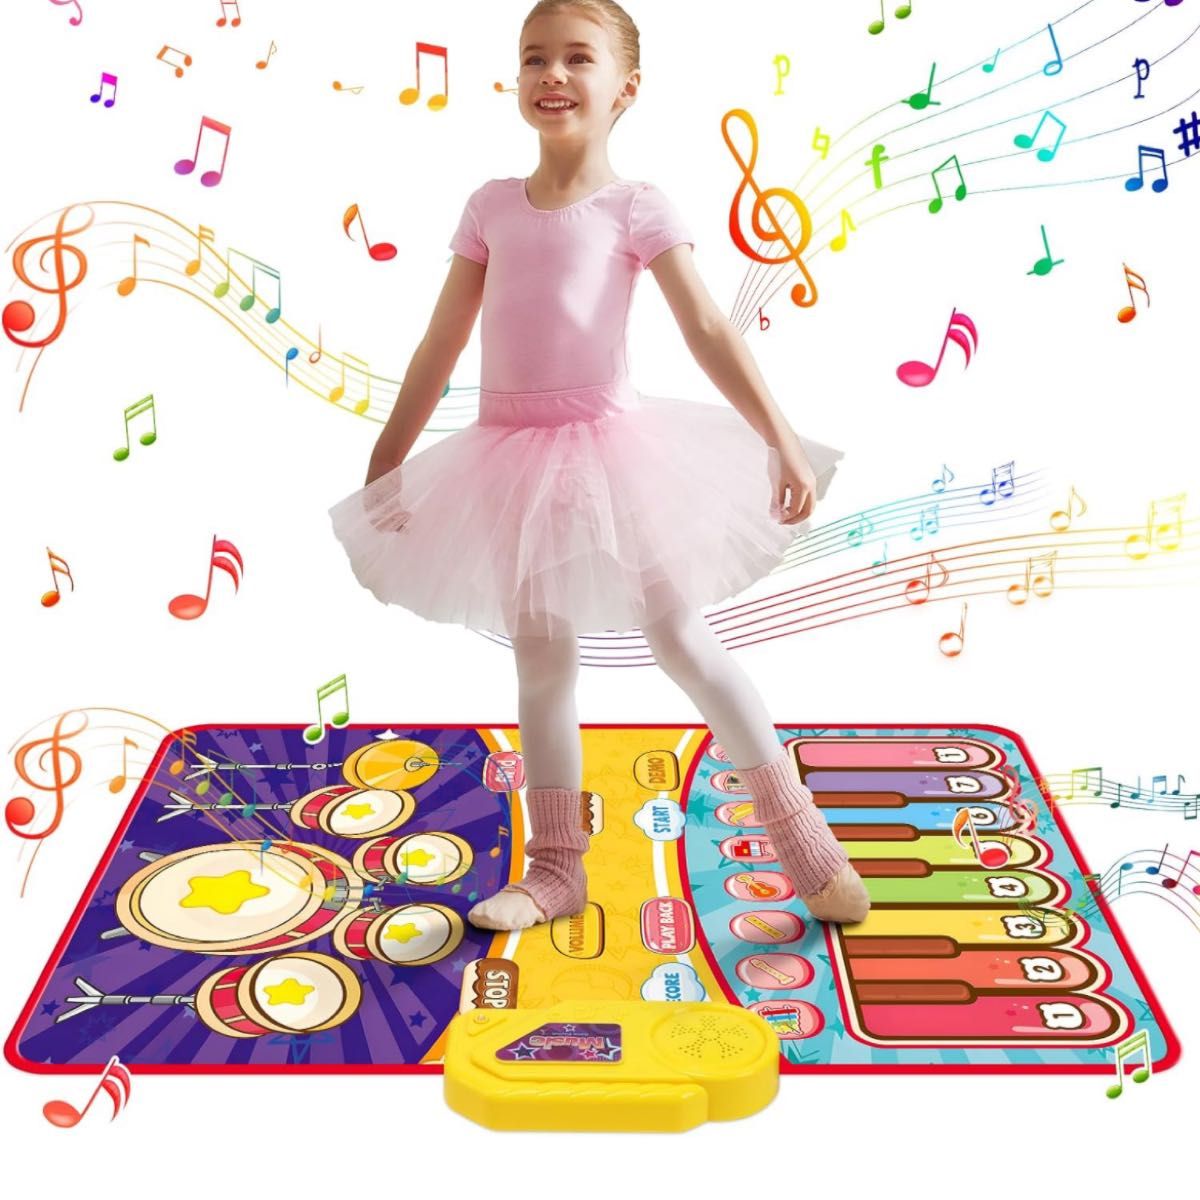 ピアノマット おもちゃ 知育玩具 2鍵盤楽器 ドラムモード 折り畳み式 子供 誕生日 プレゼント 13曲デモ 8鍵盤